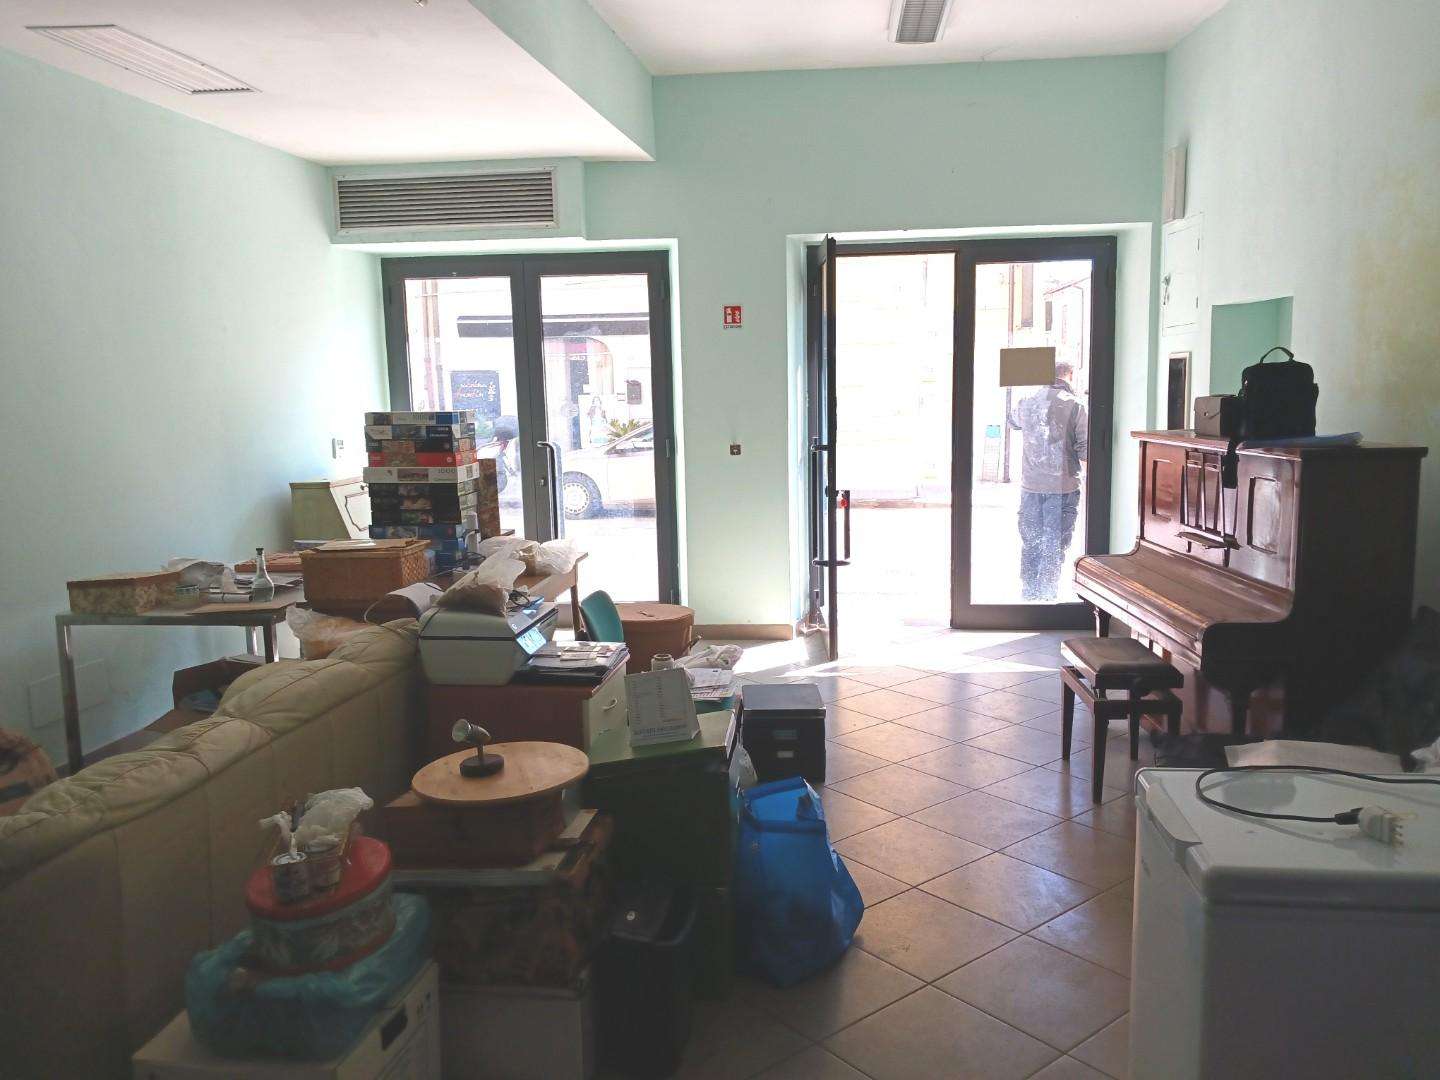 Locale commerciale in Affitto a San Giuliano Terme Pontasserchio PI,